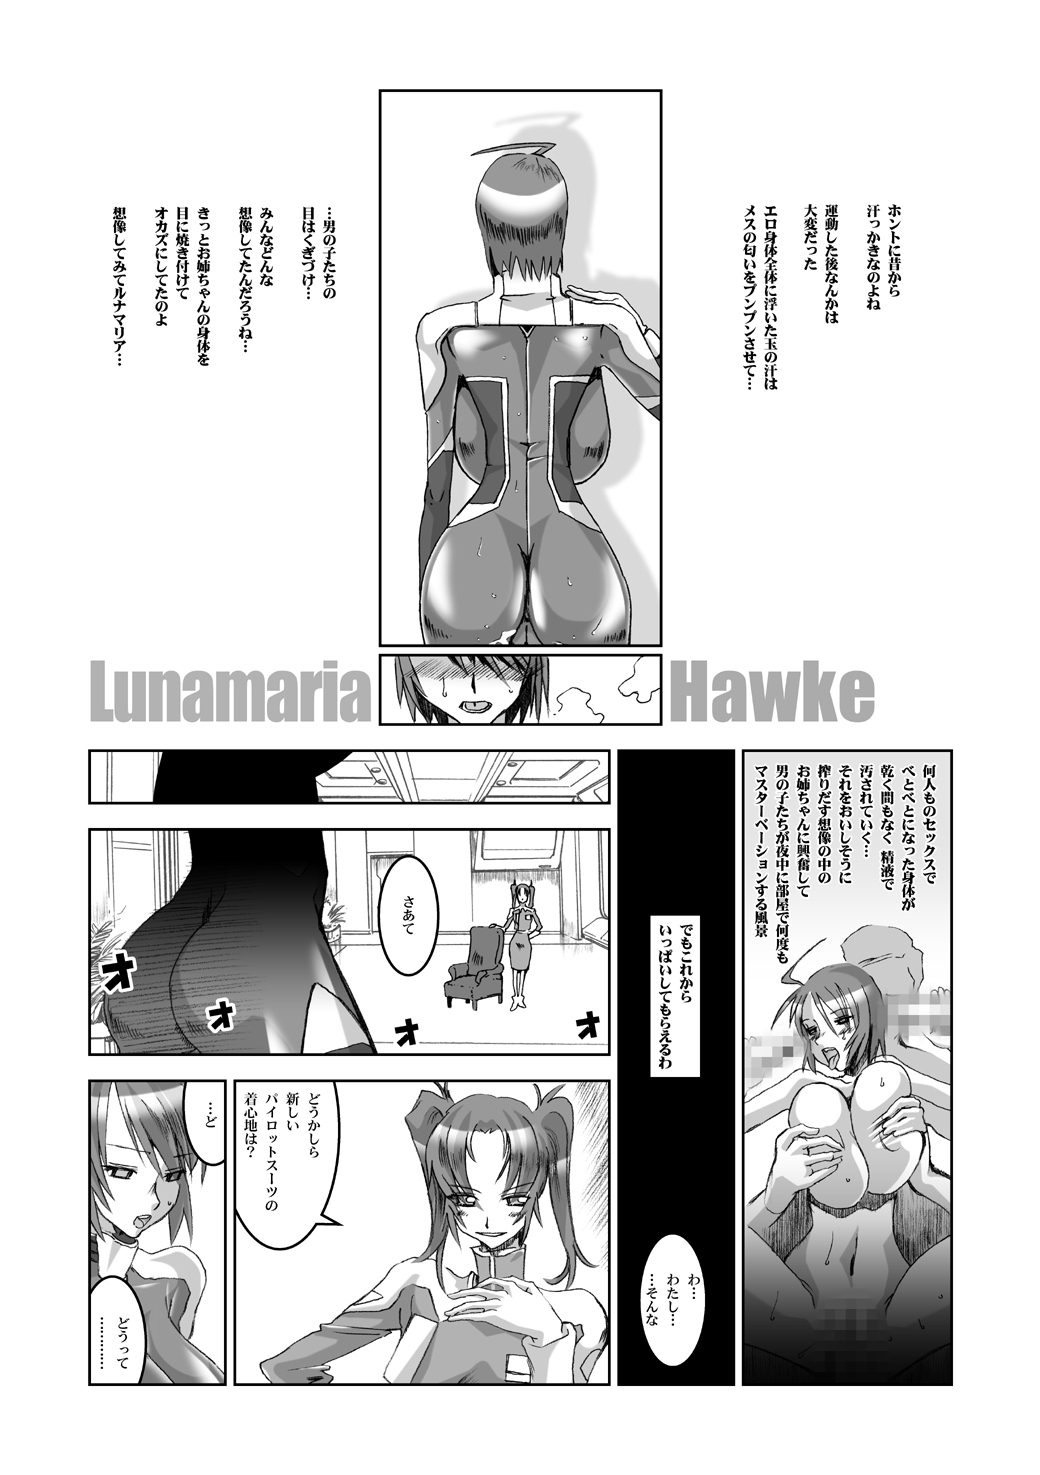 (Puniket 11) [HGH (HG Chagawa)] PLEATED GUNNER #12 (Gundam SEED DESTINY) page 10 full